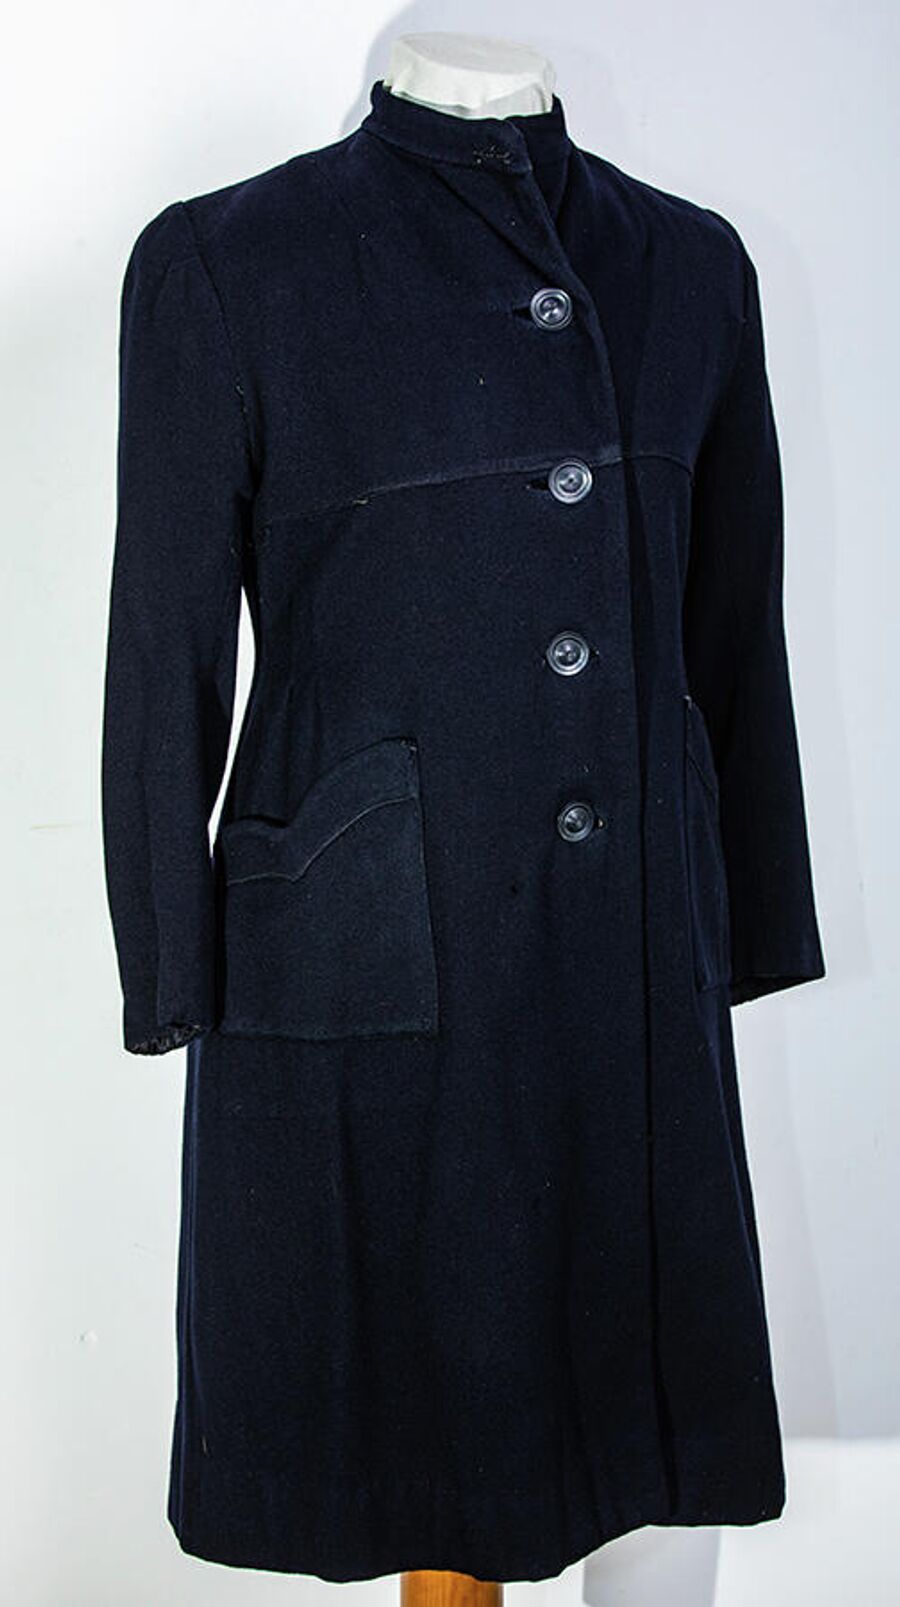 Пальто узницы концлагеря Освенцим, использованное Ириной Иванниковой при побеге